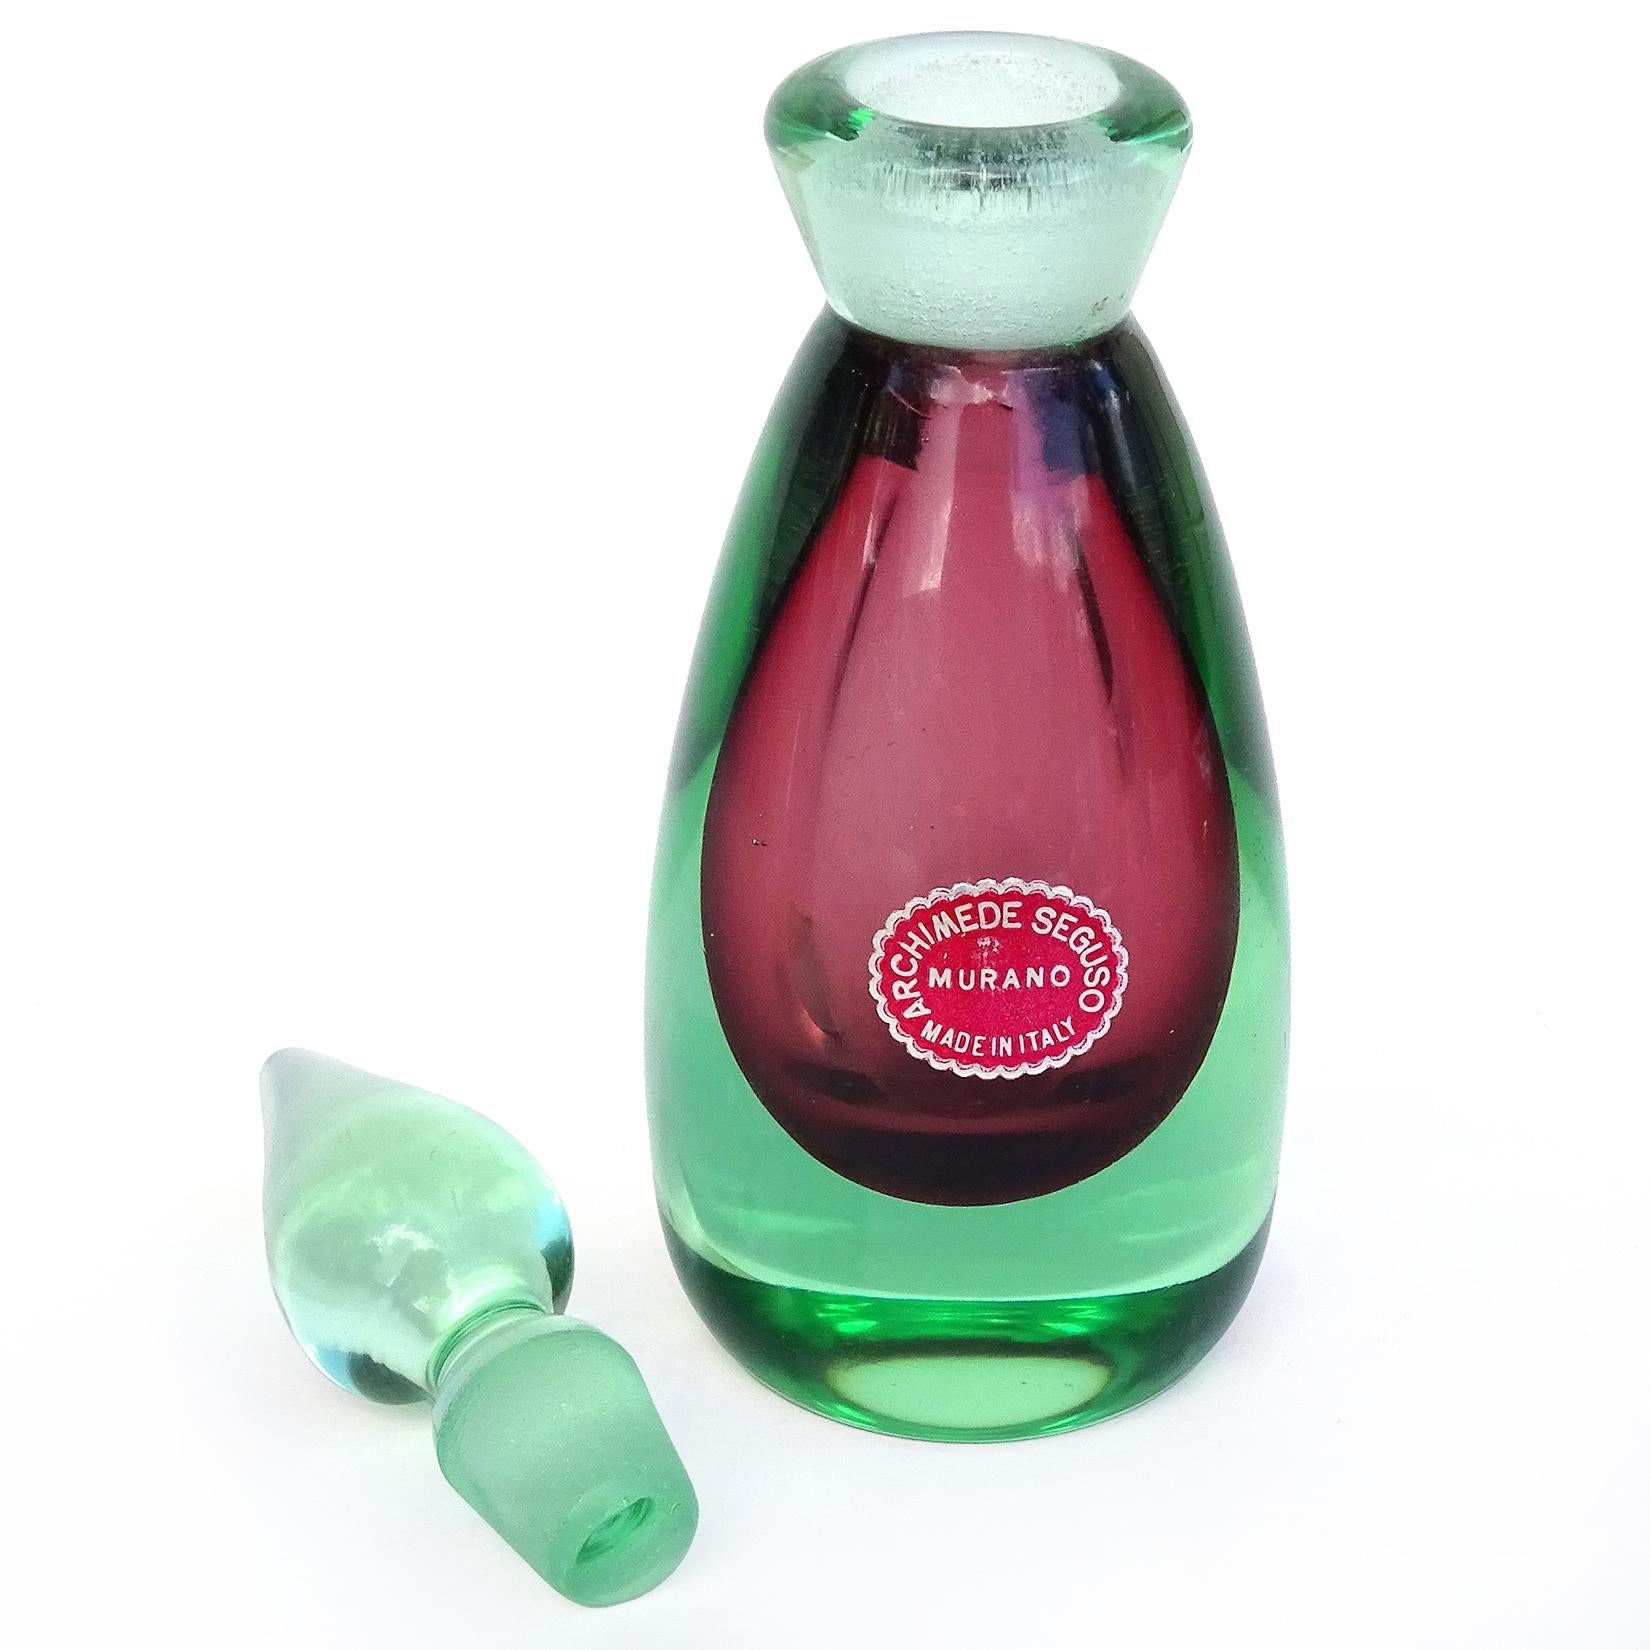 Magnifique bouteille de parfum en verre soufflé à la main Sommerso de Murano, vert clair et rouge. Documenté au designer Archimede Seguso, avec étiquette originale et intacte 